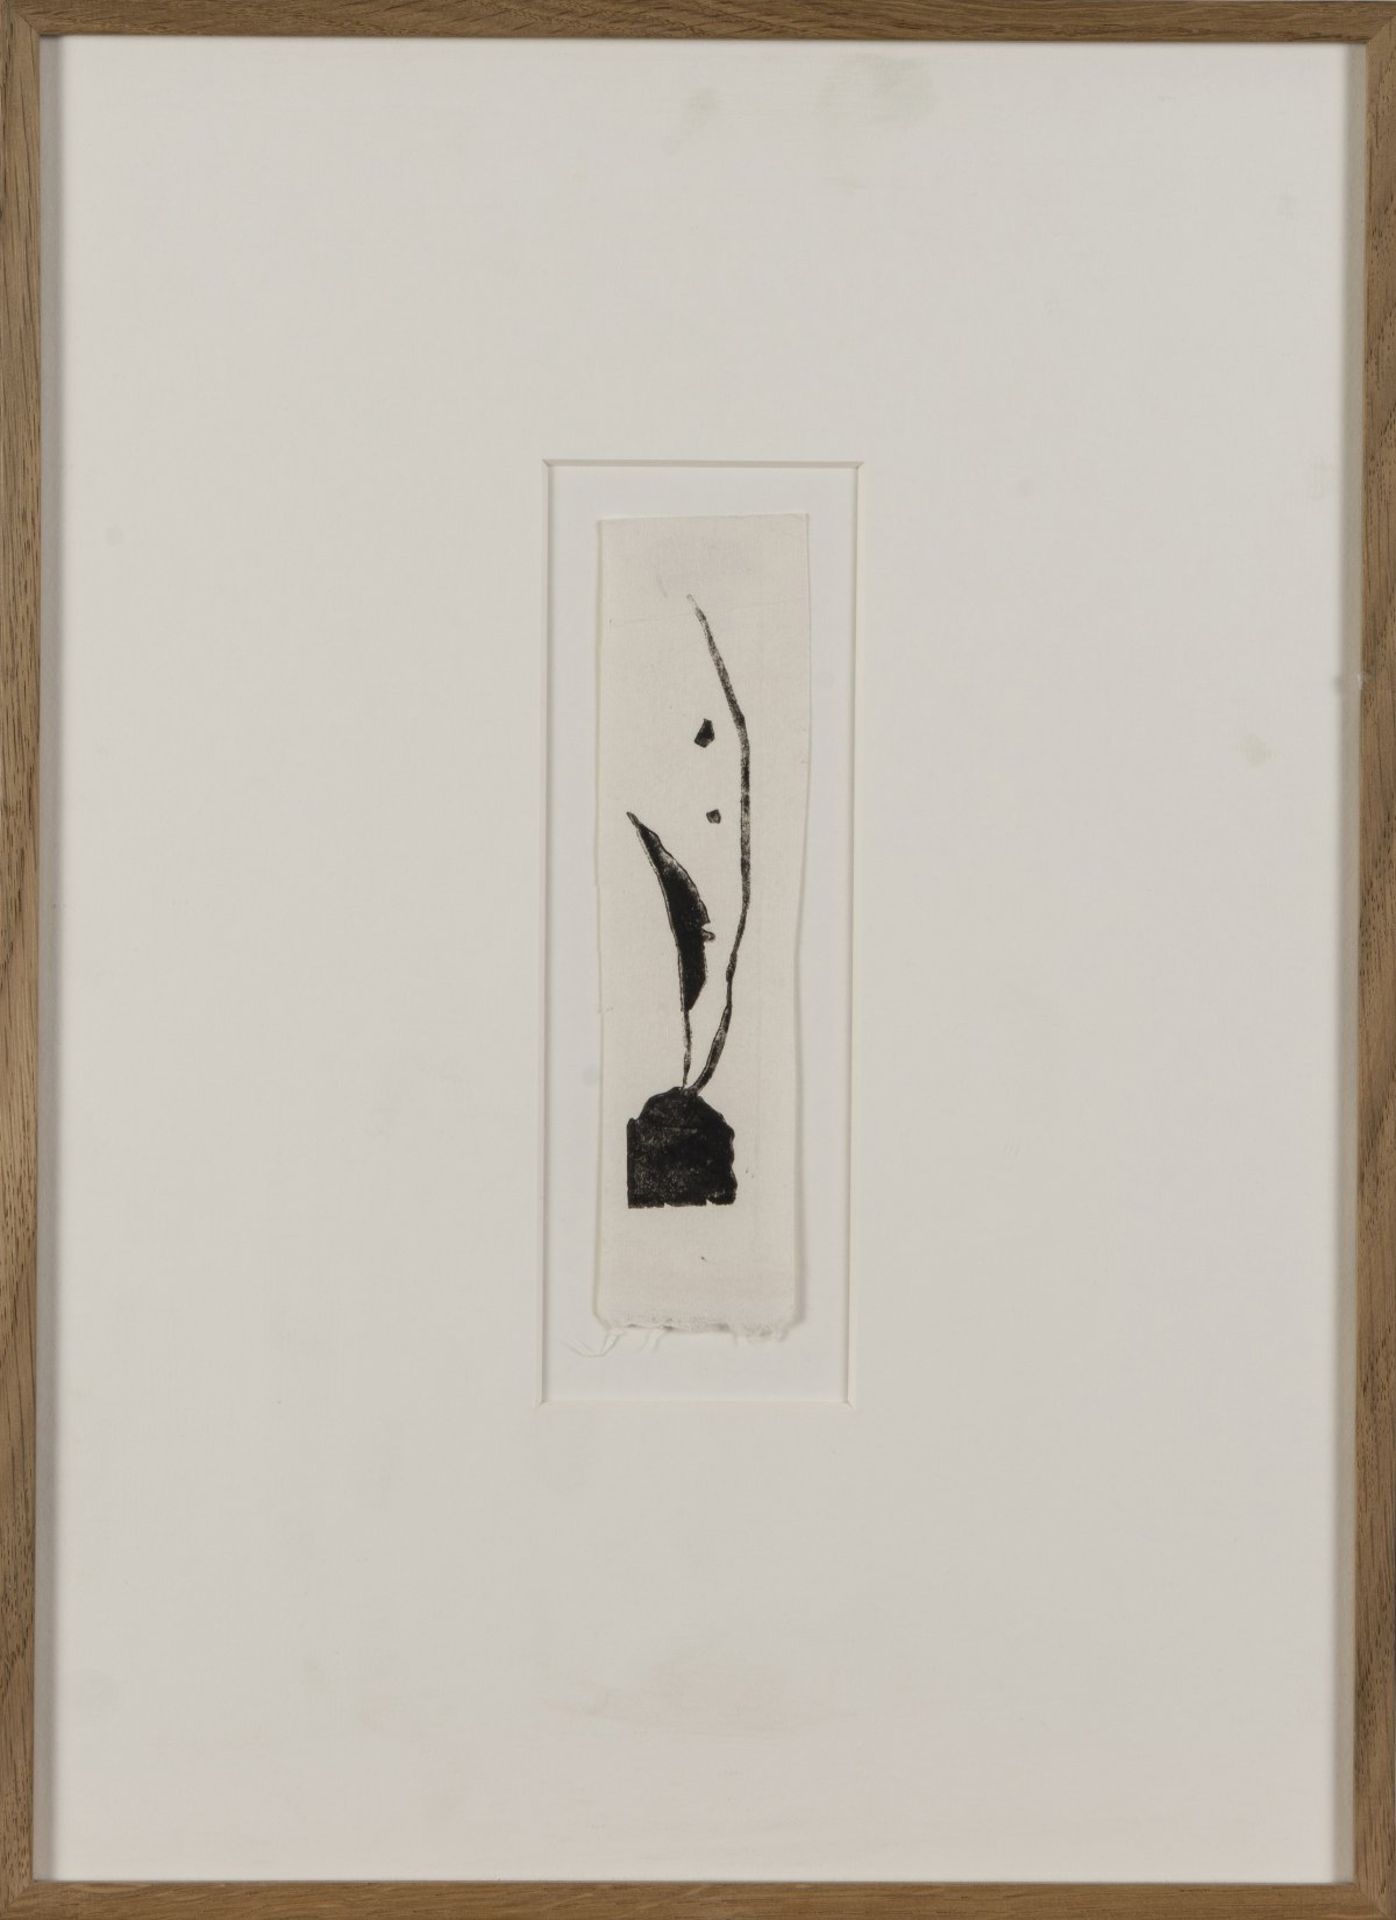 Wassily Kandinsky, 9 vignettes from 'Über das Geistige in der Kunst' and 'Klänge', all 1911 - Bild 2 aus 9